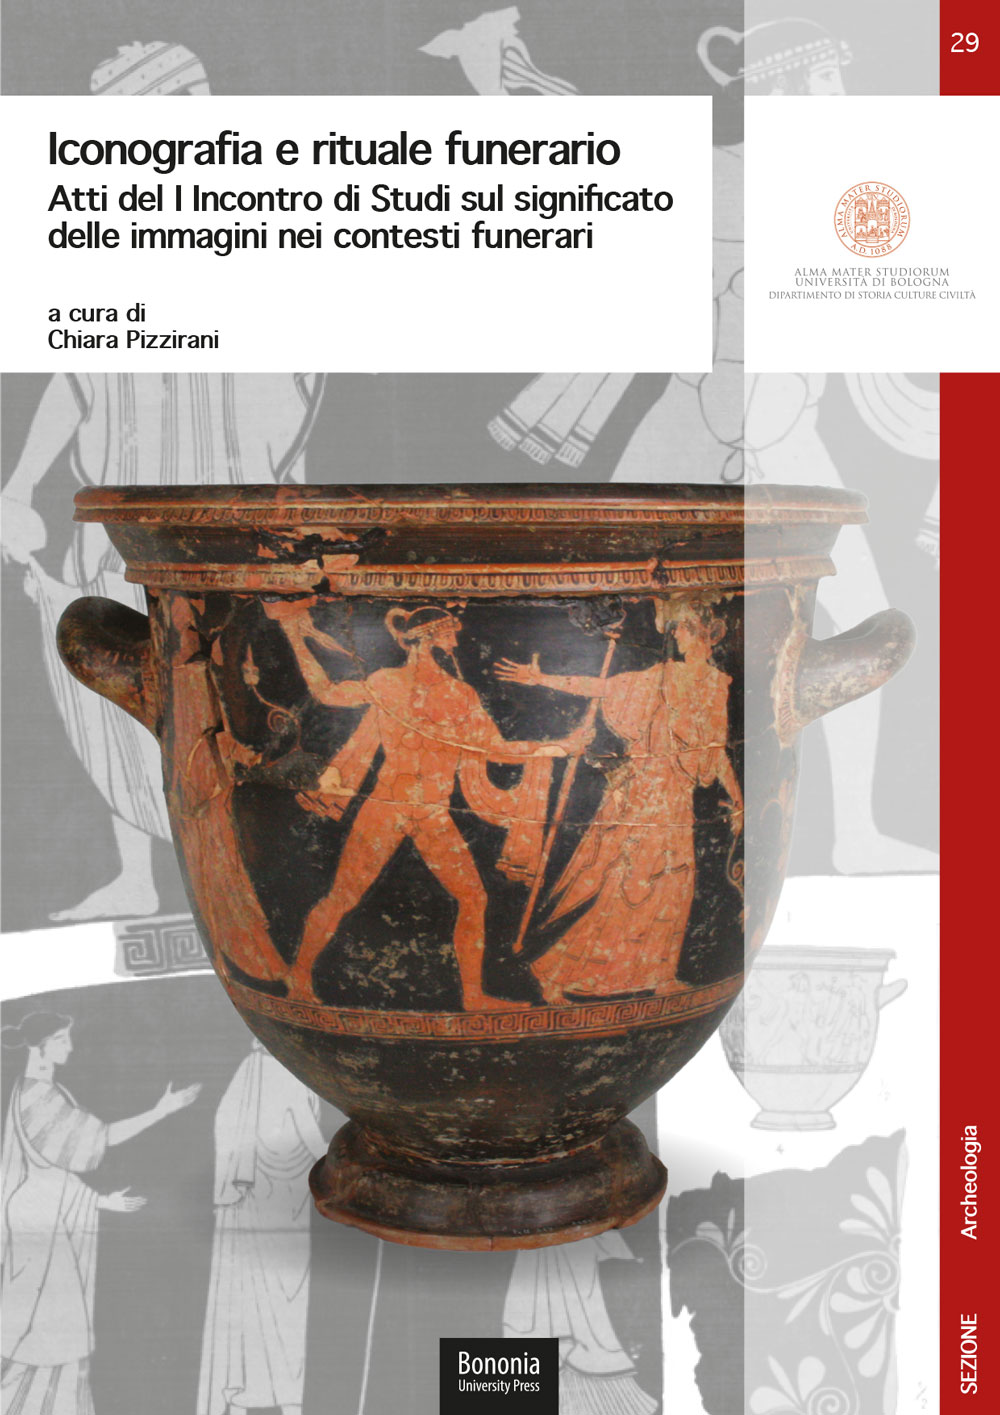 29. Iconografia e rituale funerario - Bologna University Press